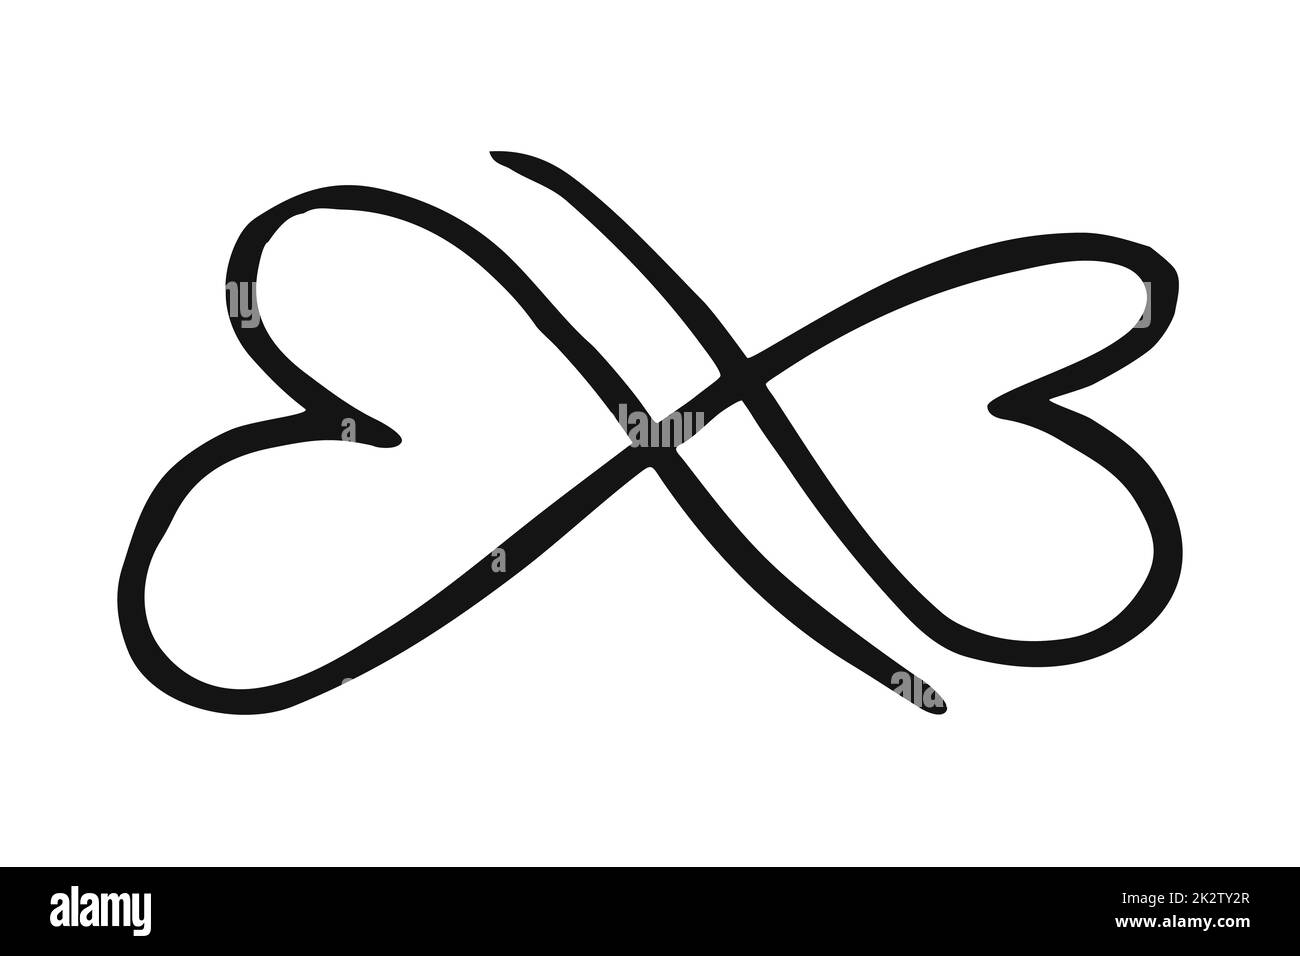 Infinity symbol ink brush stroke isolated on white background Stock Photo